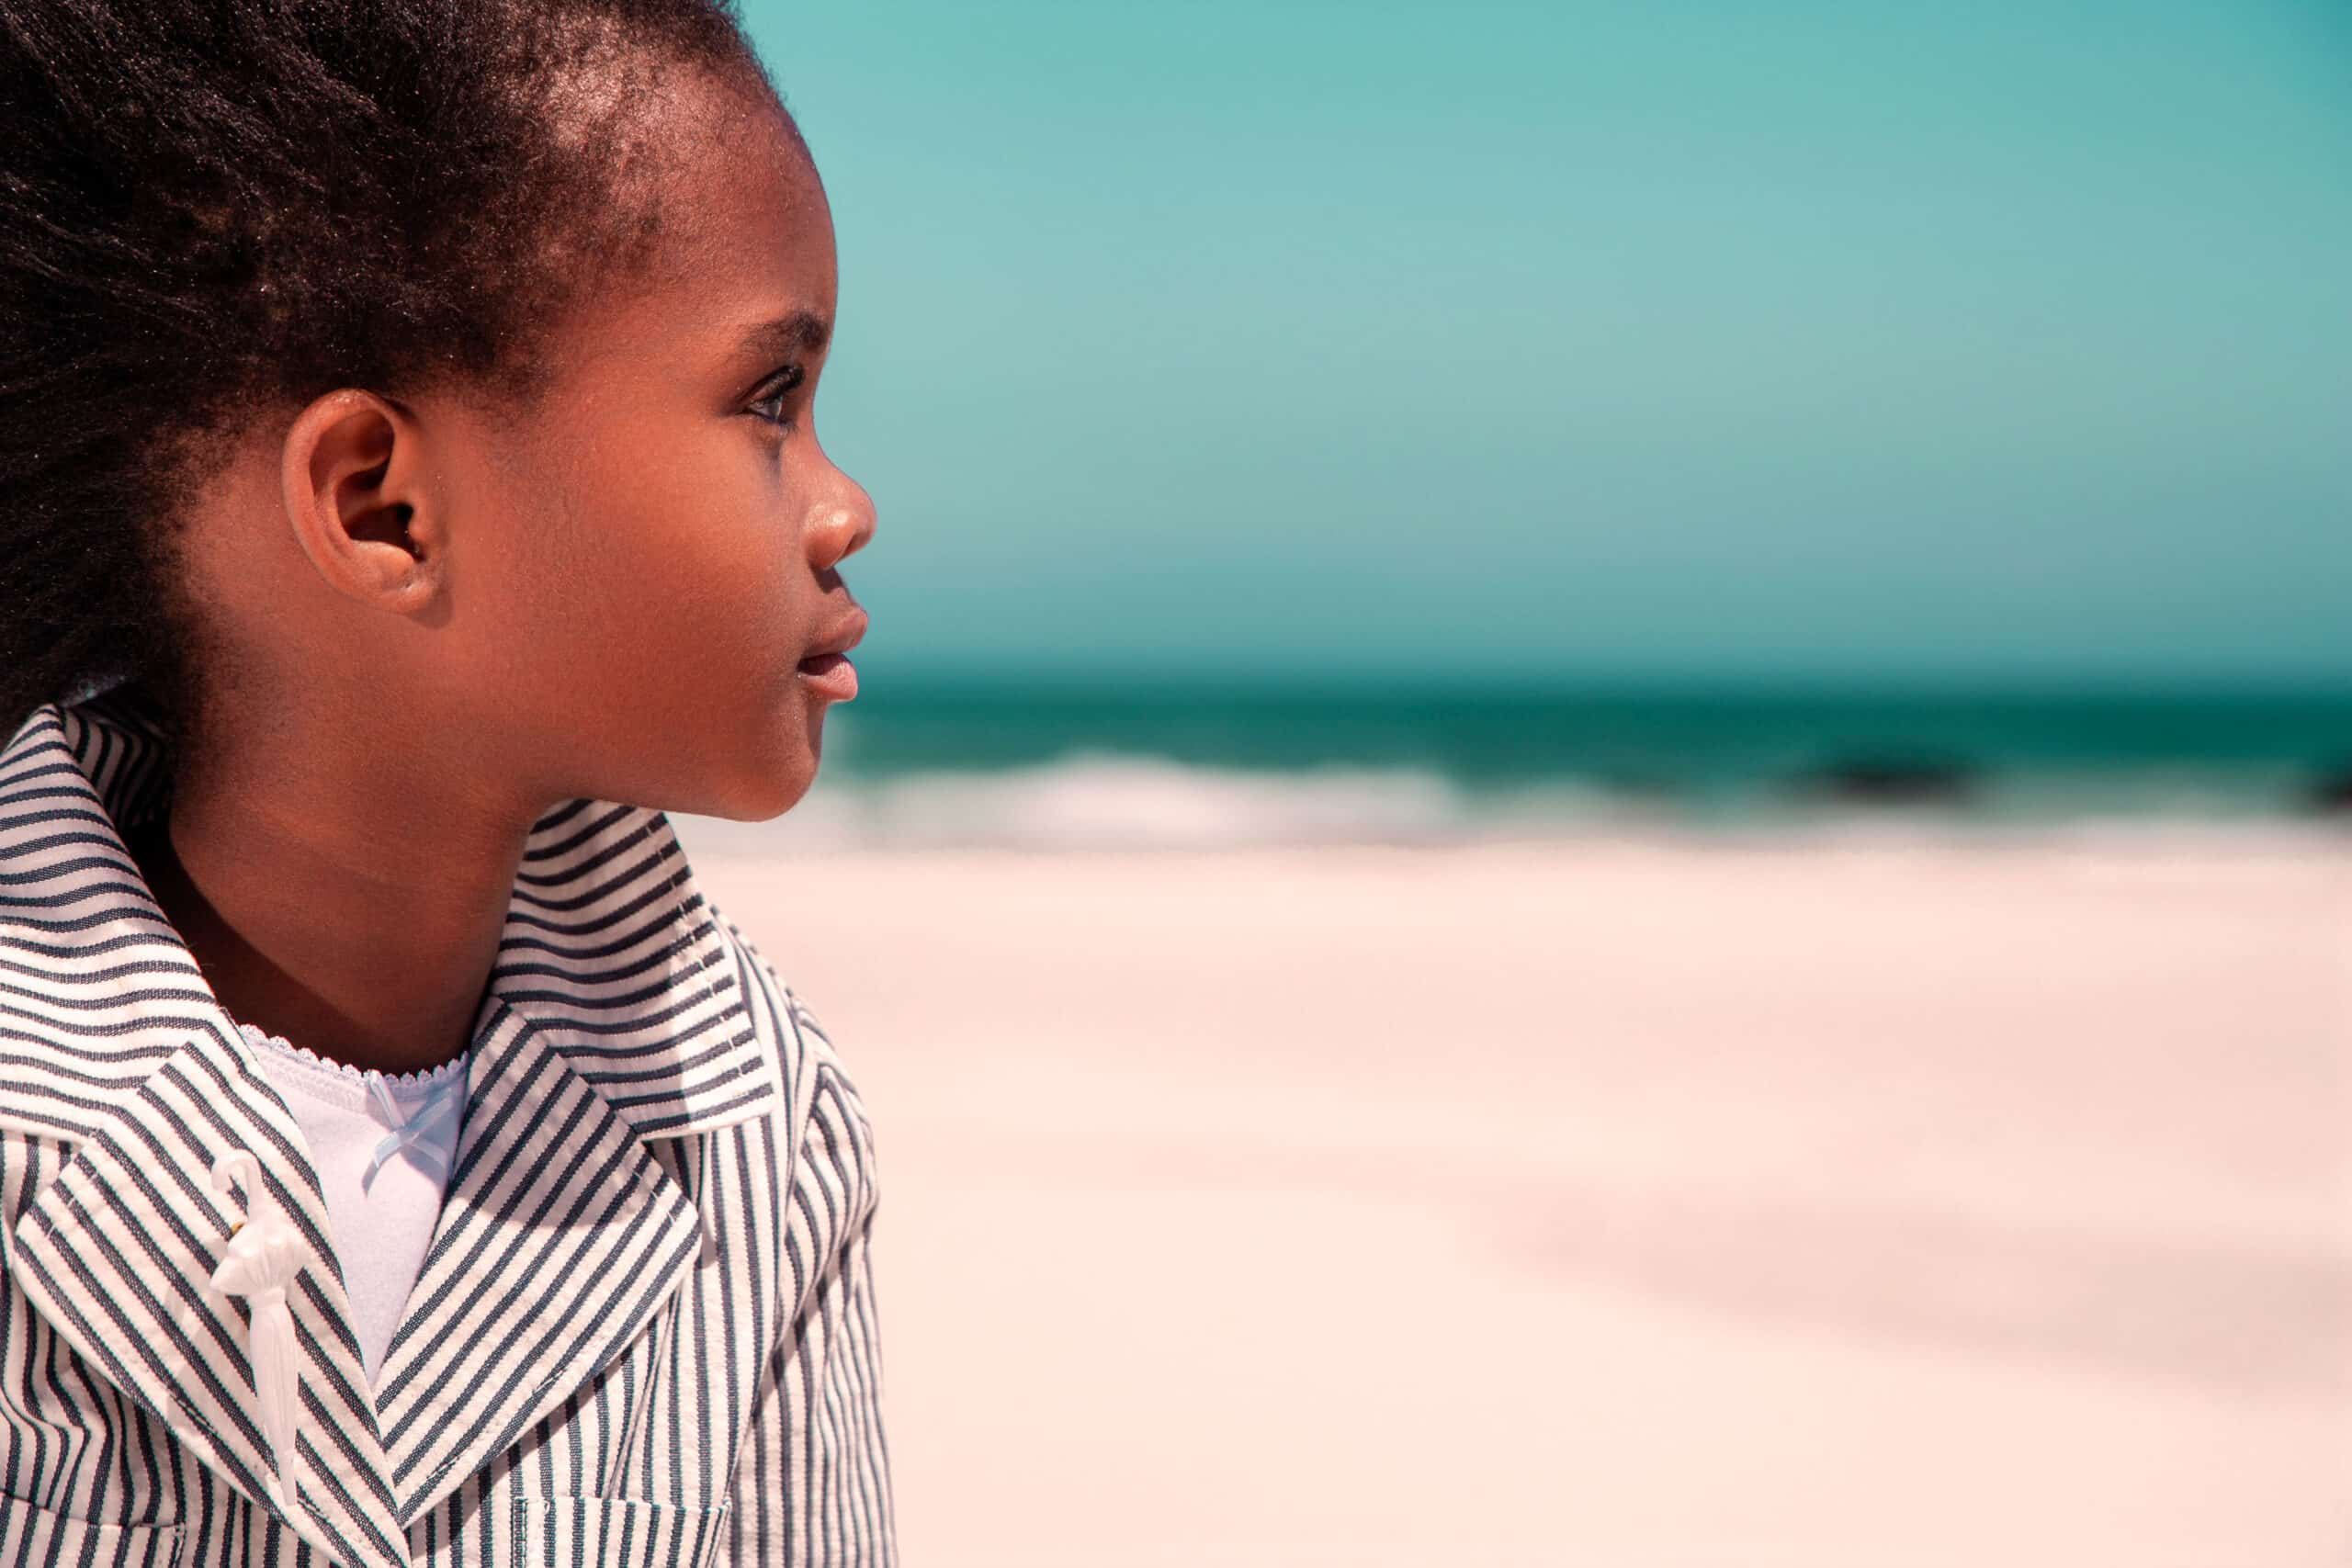 Ein junges Mädchen mit dunklem, zu Zöpfen frisiertem Haar blickt an einem sonnigen Strand aufs Meer. Es trägt eine gestreifte Jacke und hat einen nachdenklichen Gesichtsausdruck. © Fotografie Tomas Rodriguez